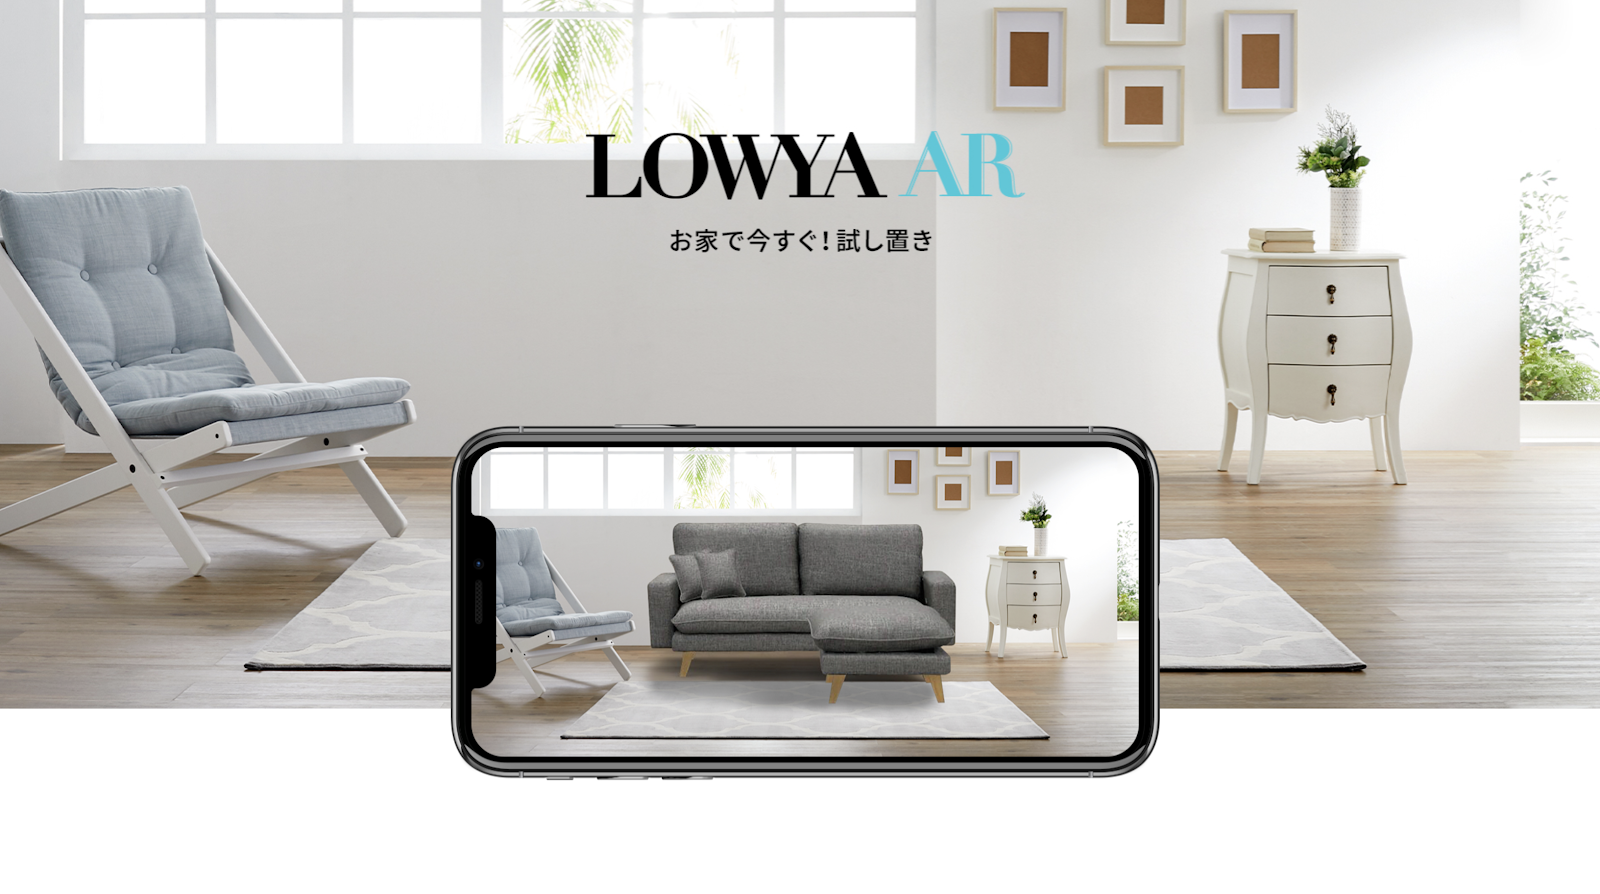 LOWYA AR -  Example of AR online shopping